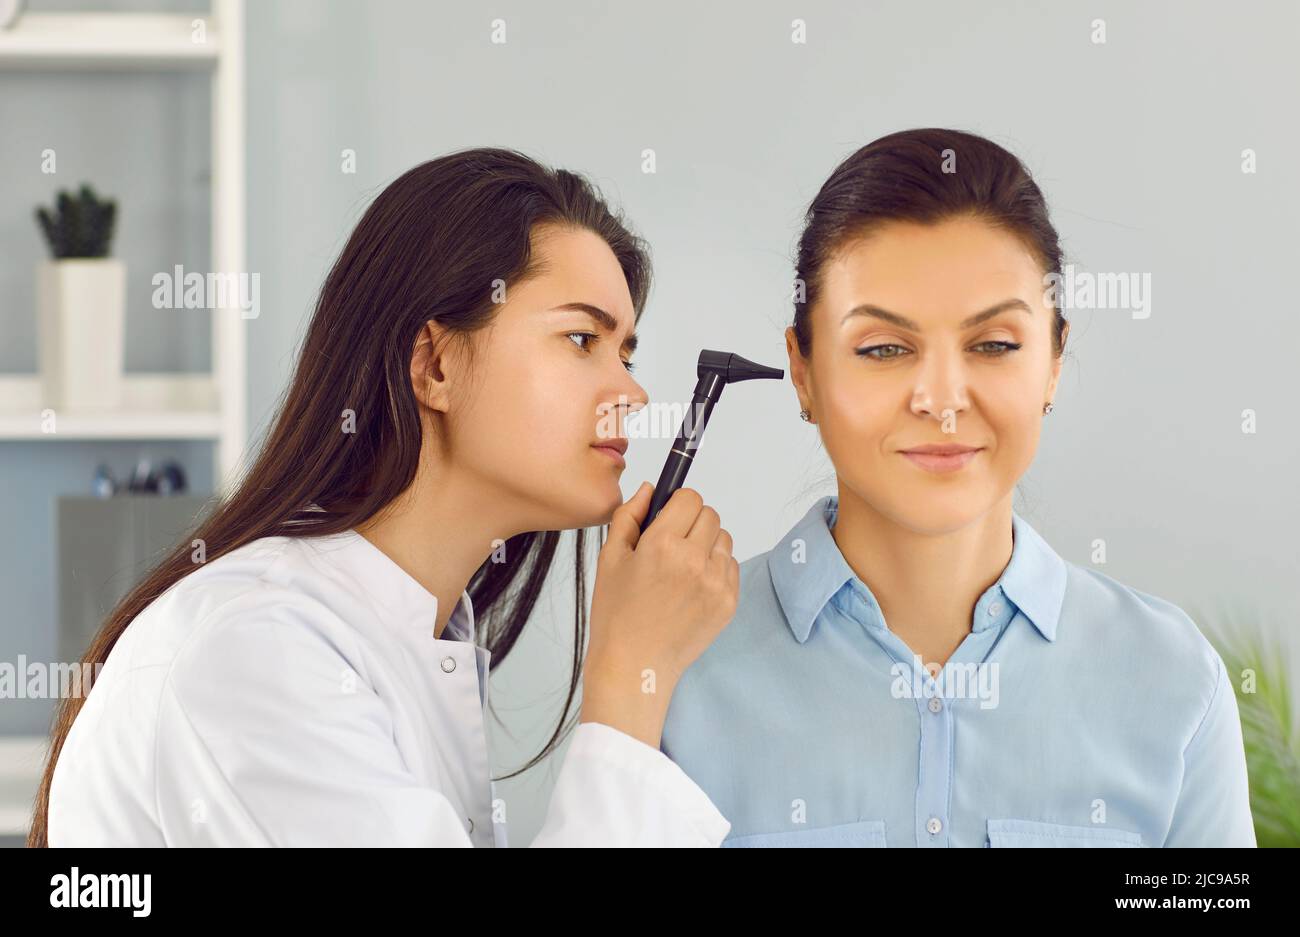 El médico de ENT utiliza un otoscopio para examinar el oído de la mujer joven durante el chequeo médico en el consultorio Foto de stock